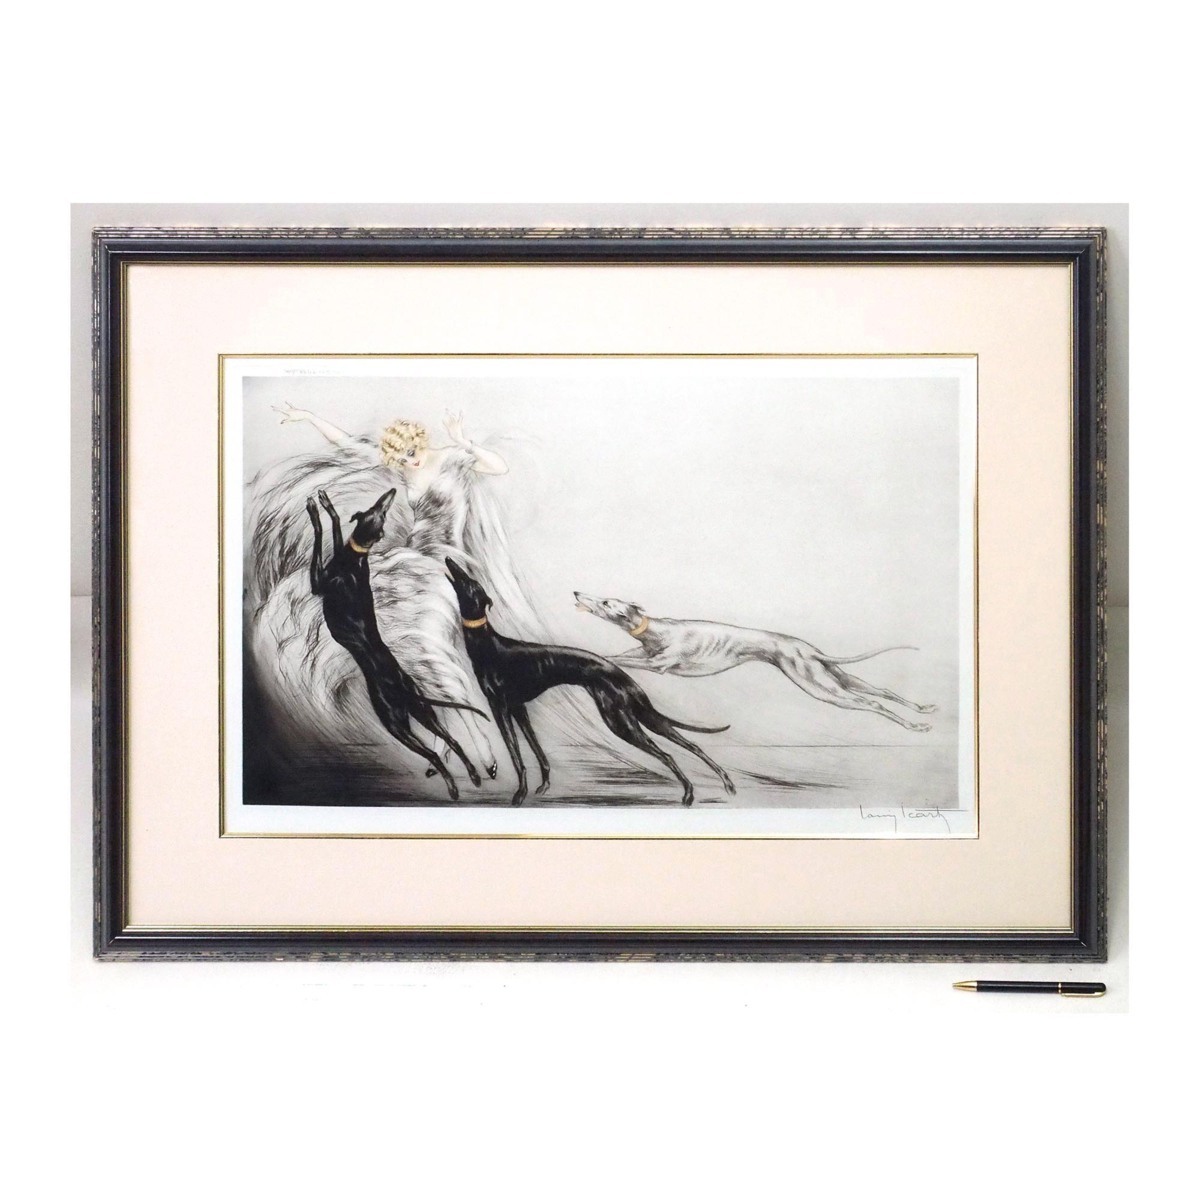 ルイ・イカール 「コージングII」 /エッチング/直筆サイン有り/1929年制作/アールデコ時代にフランスで活躍/真作保証/ENCHANTE_画像2